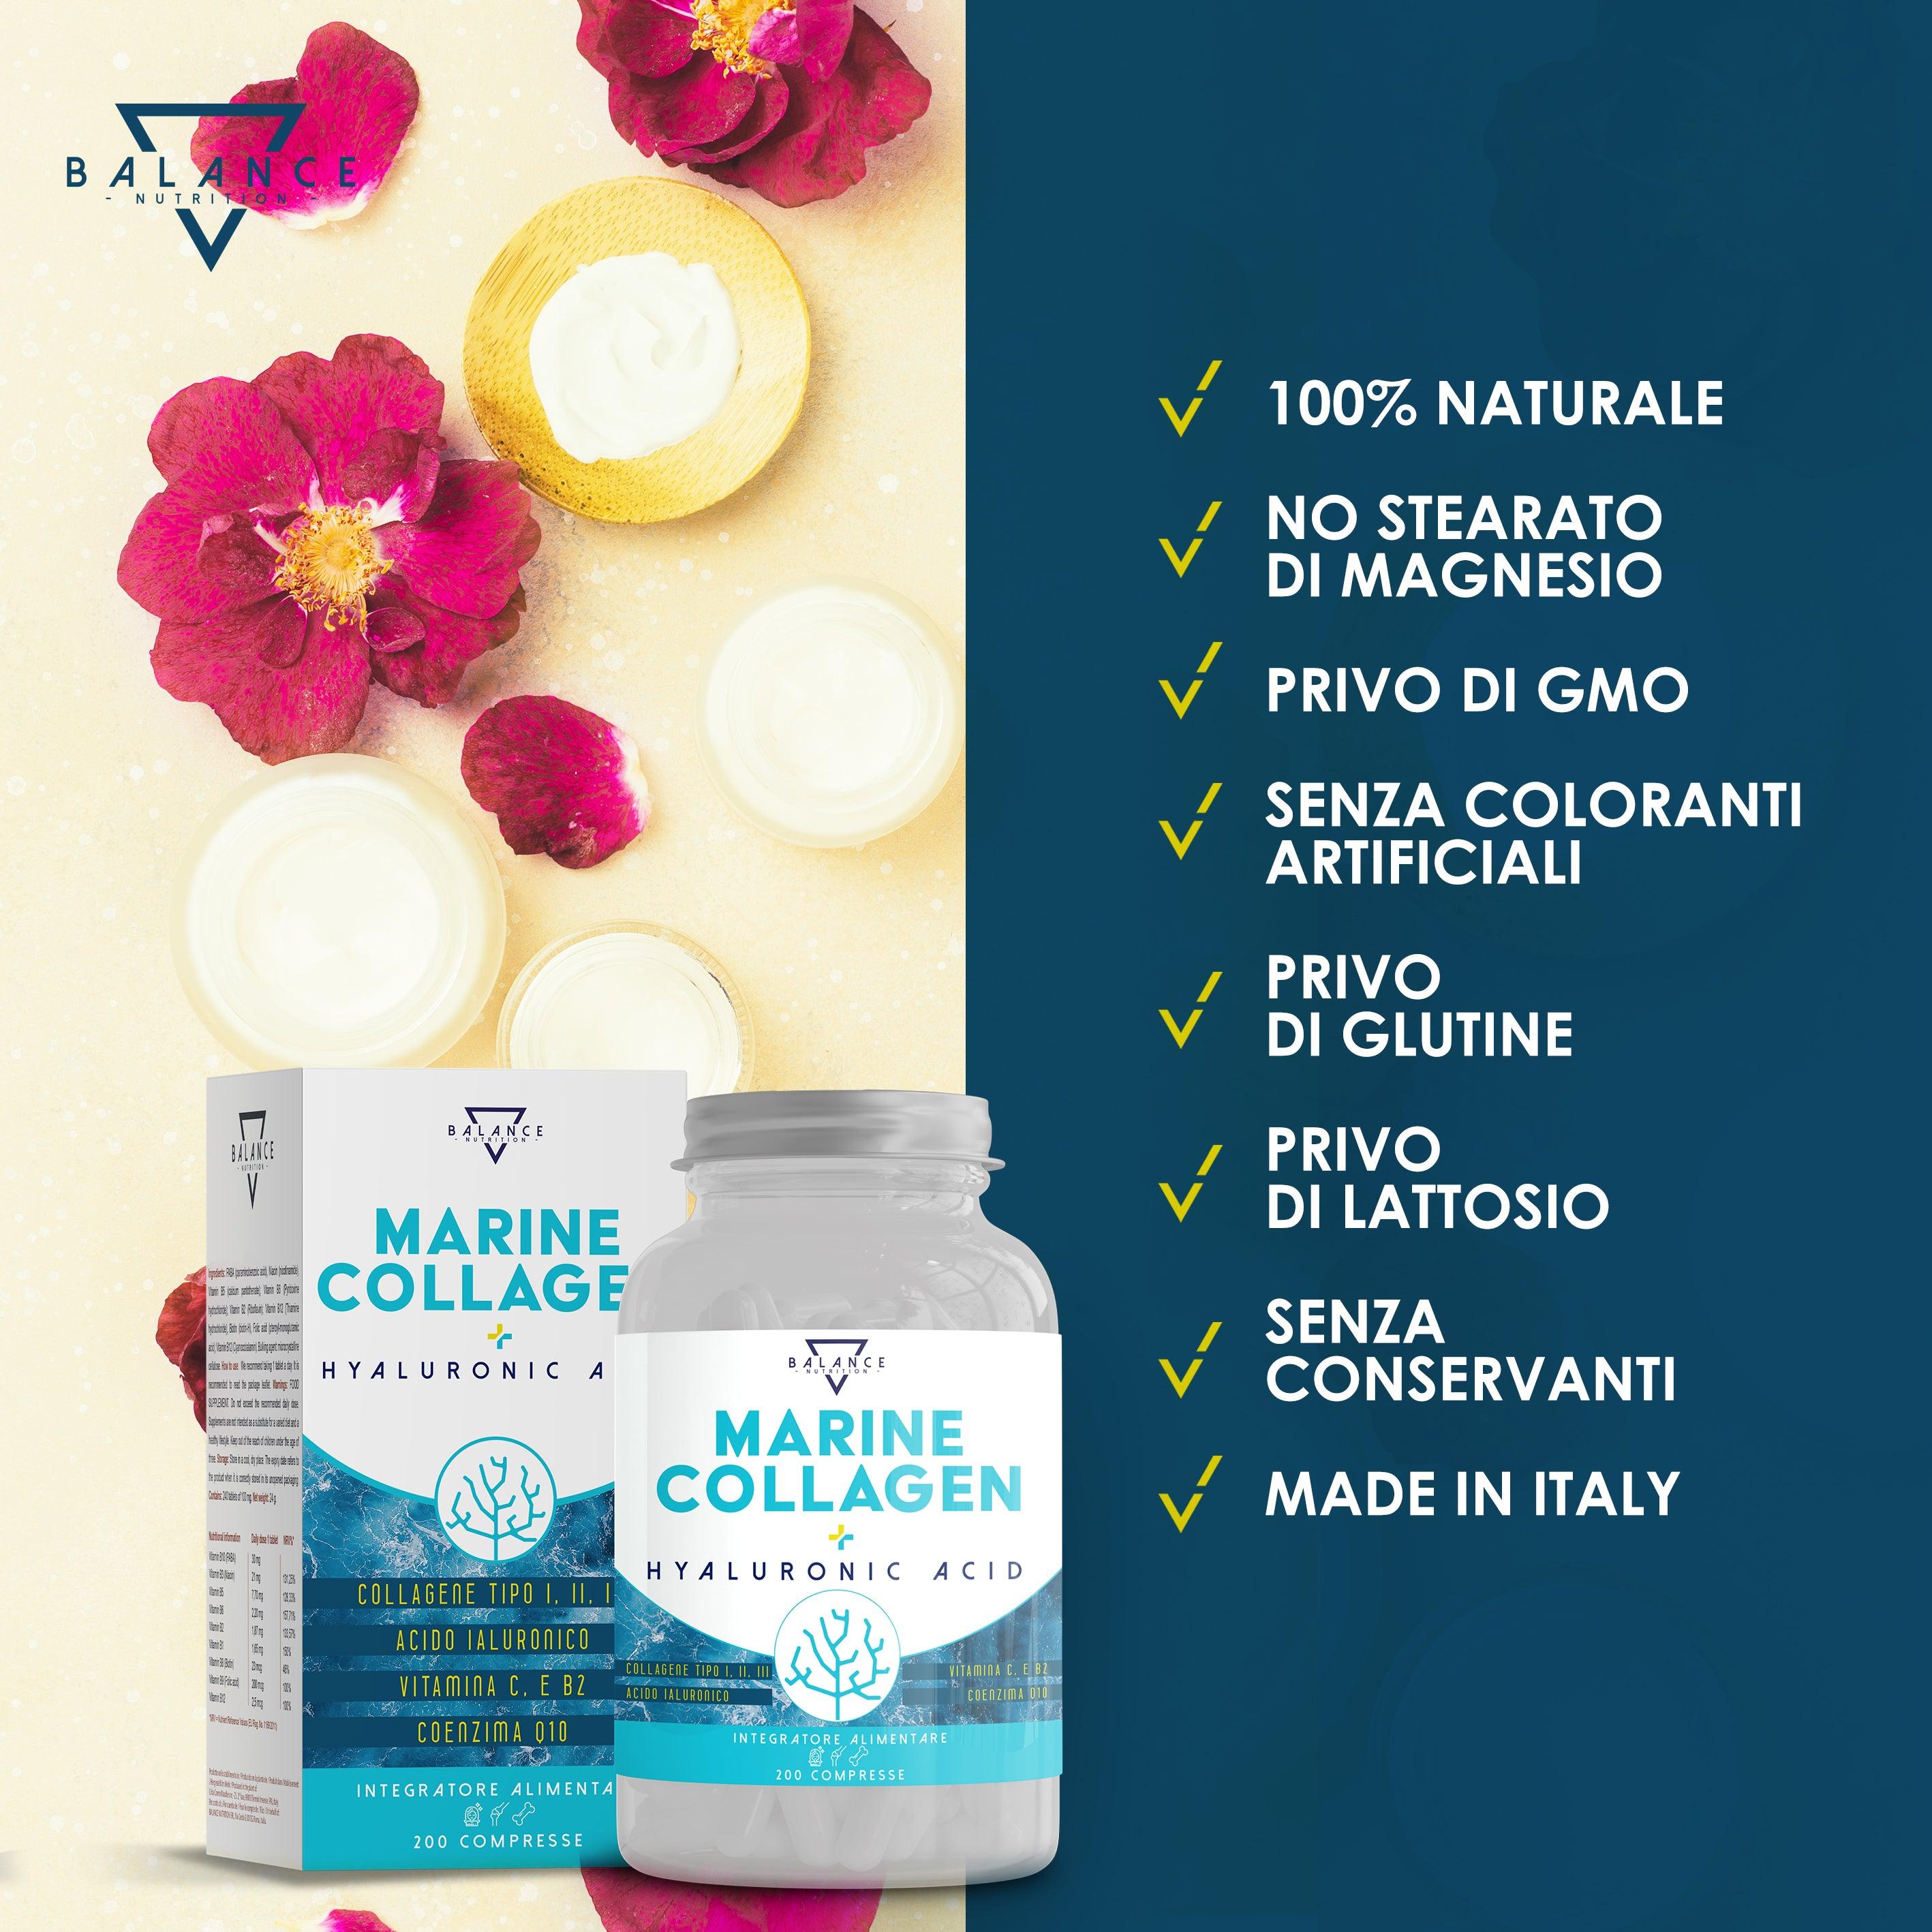 COLLAGENE MARINO® - 200 Compresse (fino a 7 mesi di fornitura) | Collagene Marino con Acido Ialuronico | Collagene di tipo I, II e III con Complex di 7 attivi, Ovomet®, Vitamina C e Coenzima Q10